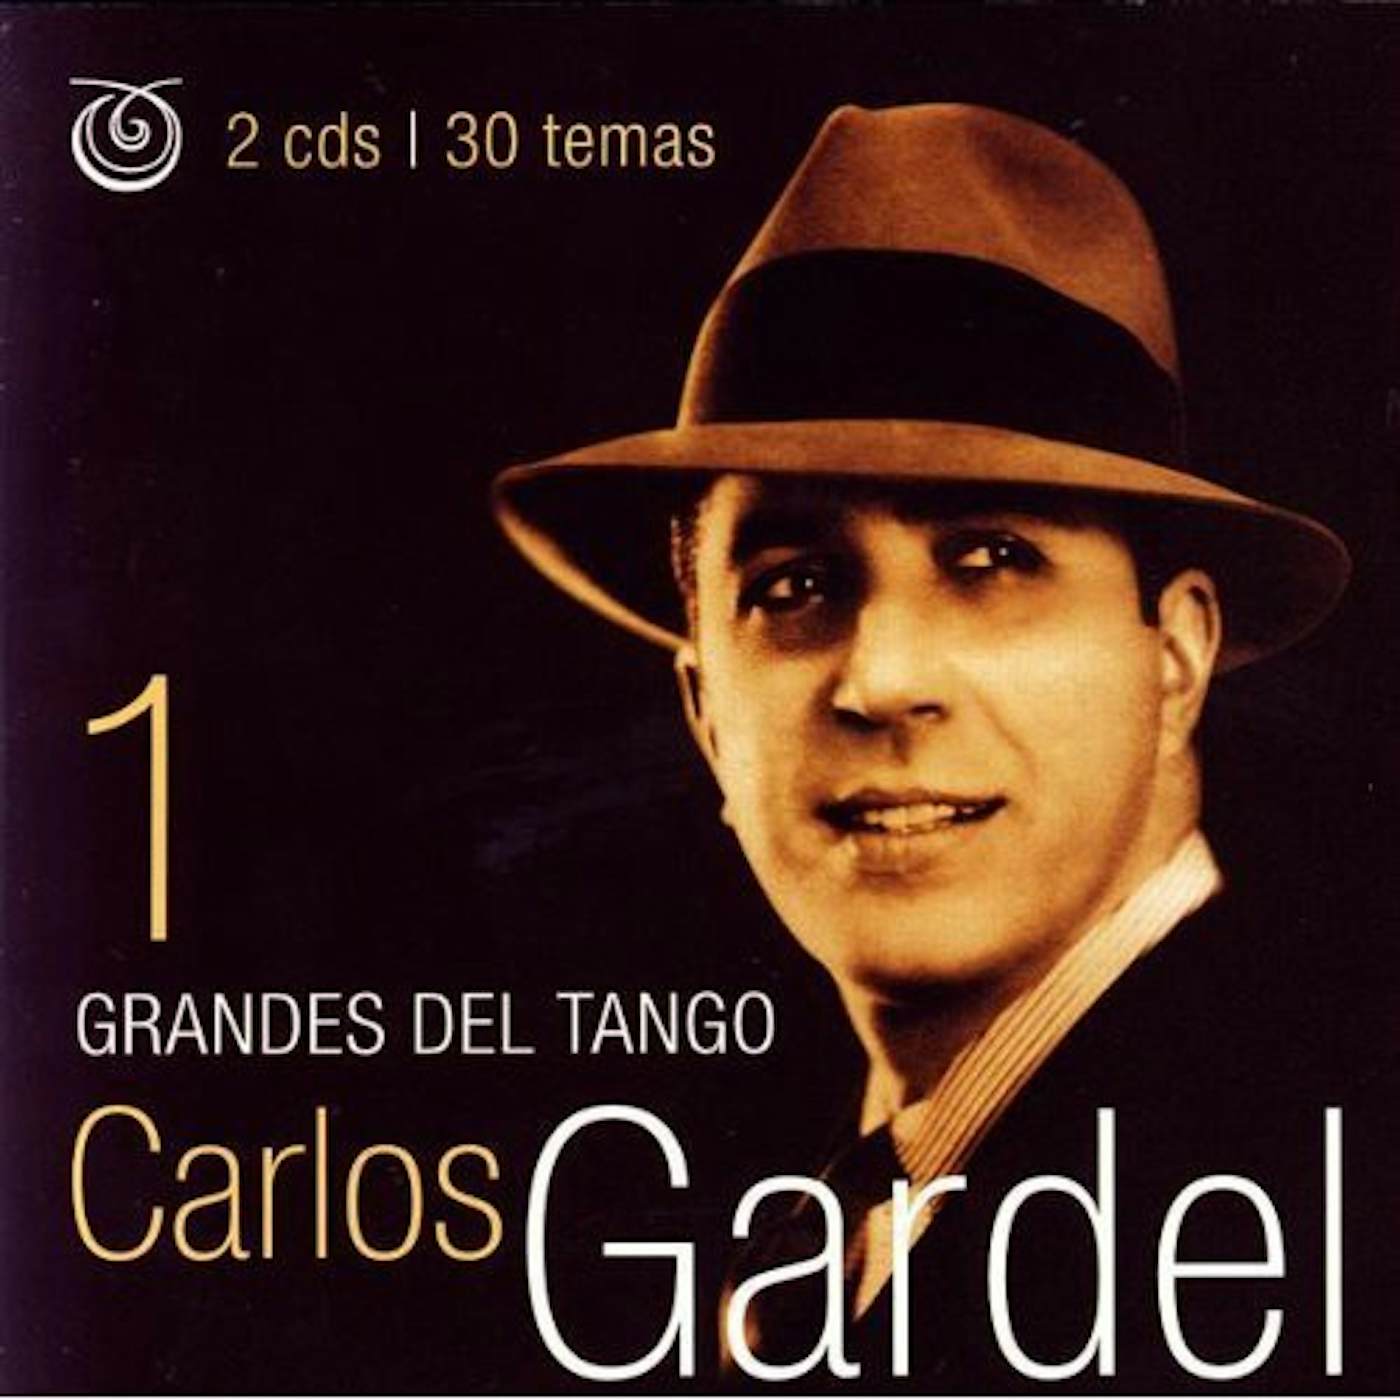 Carlos Gardel GRANDES DEL TANGO 1 CD